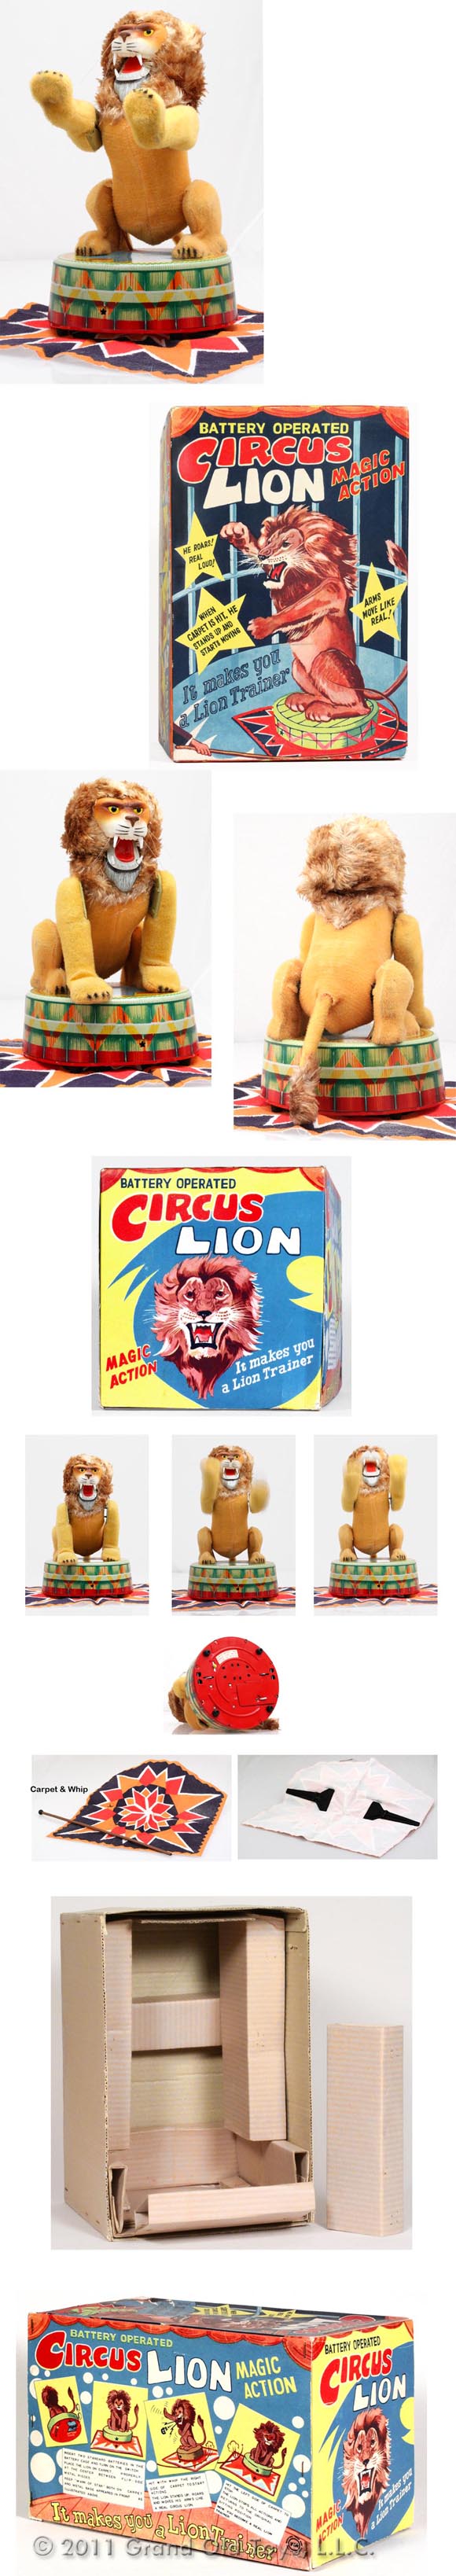 c.1953 VIA, Circus Lion In Original Box